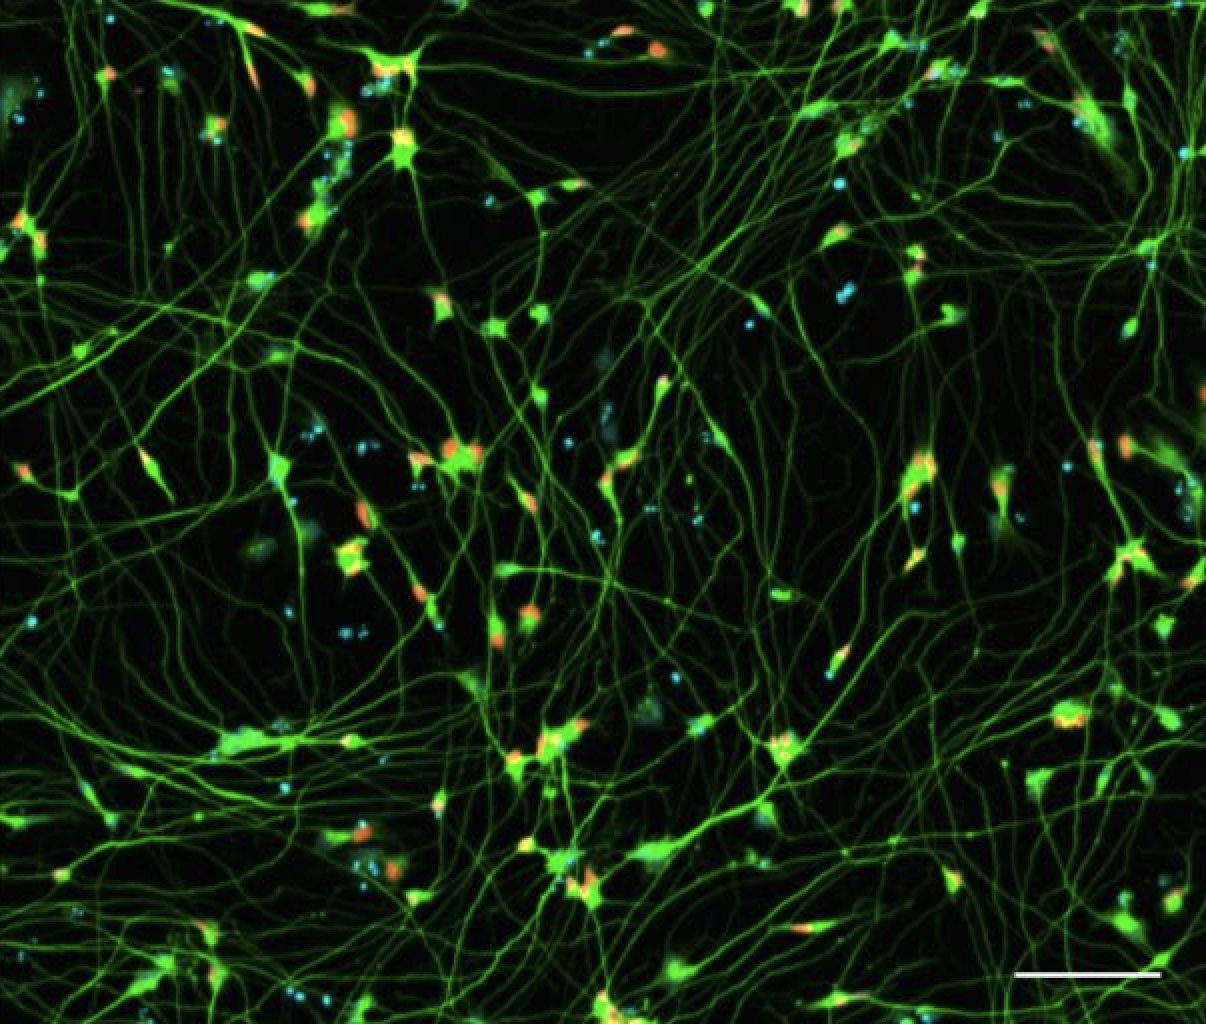 iPSC-derived Motor Neurons